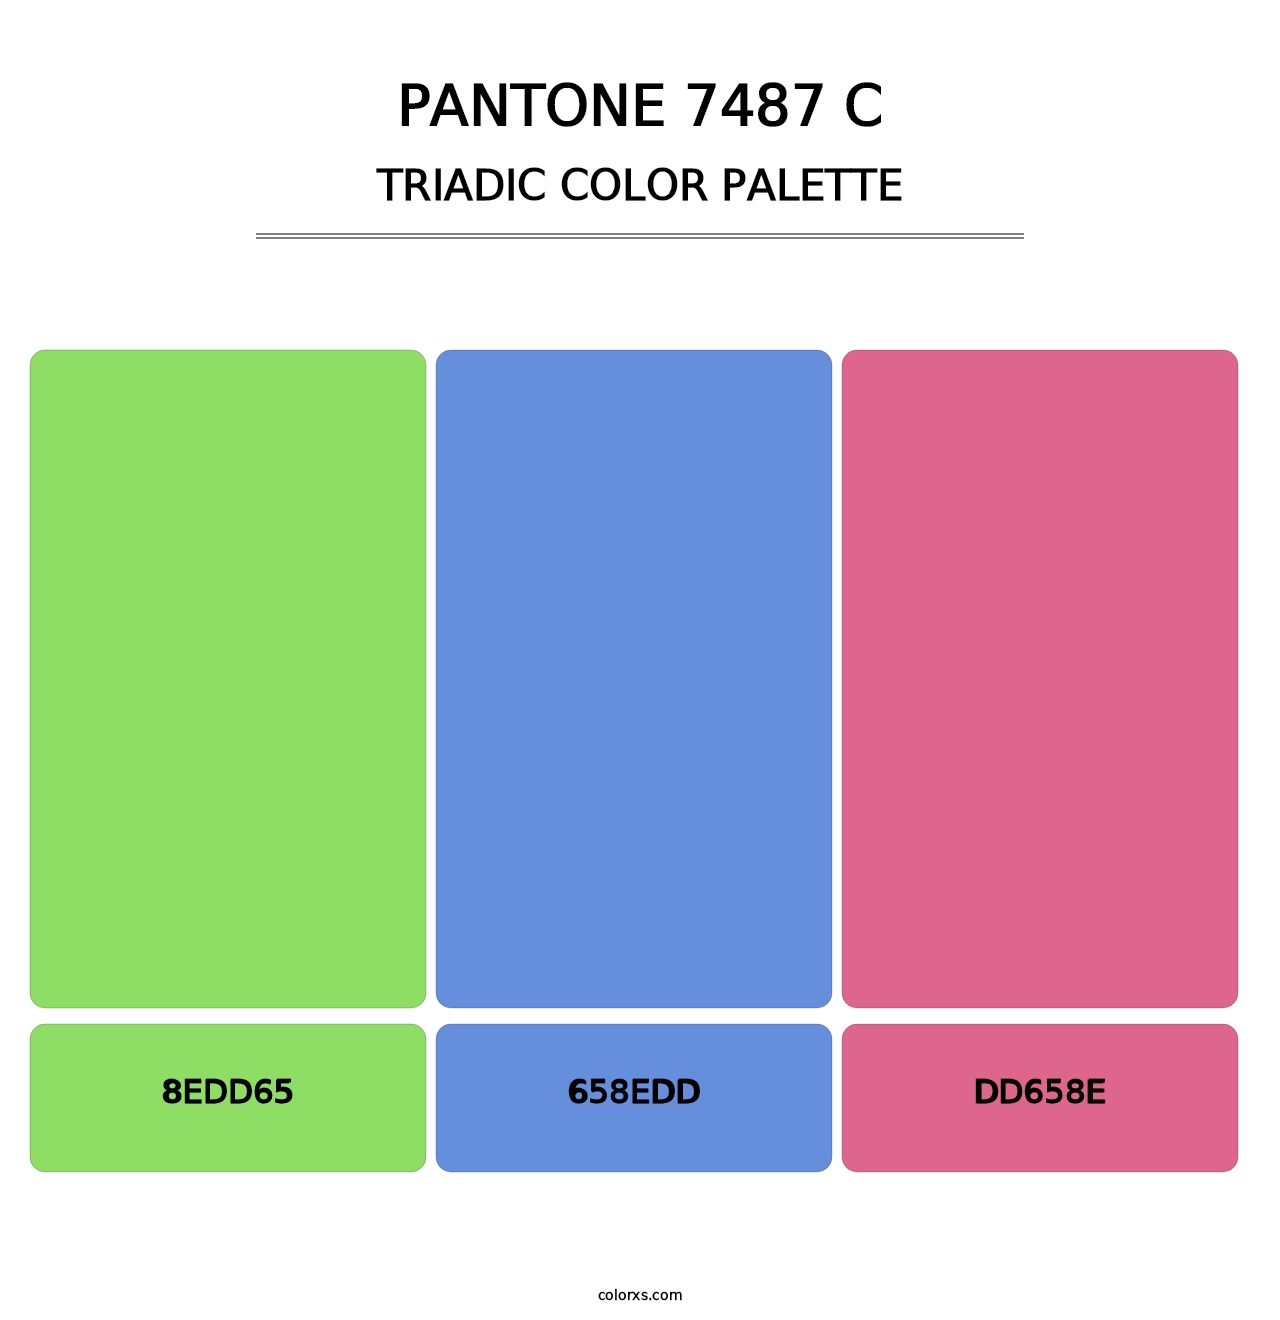 PANTONE 7487 C - Triadic Color Palette